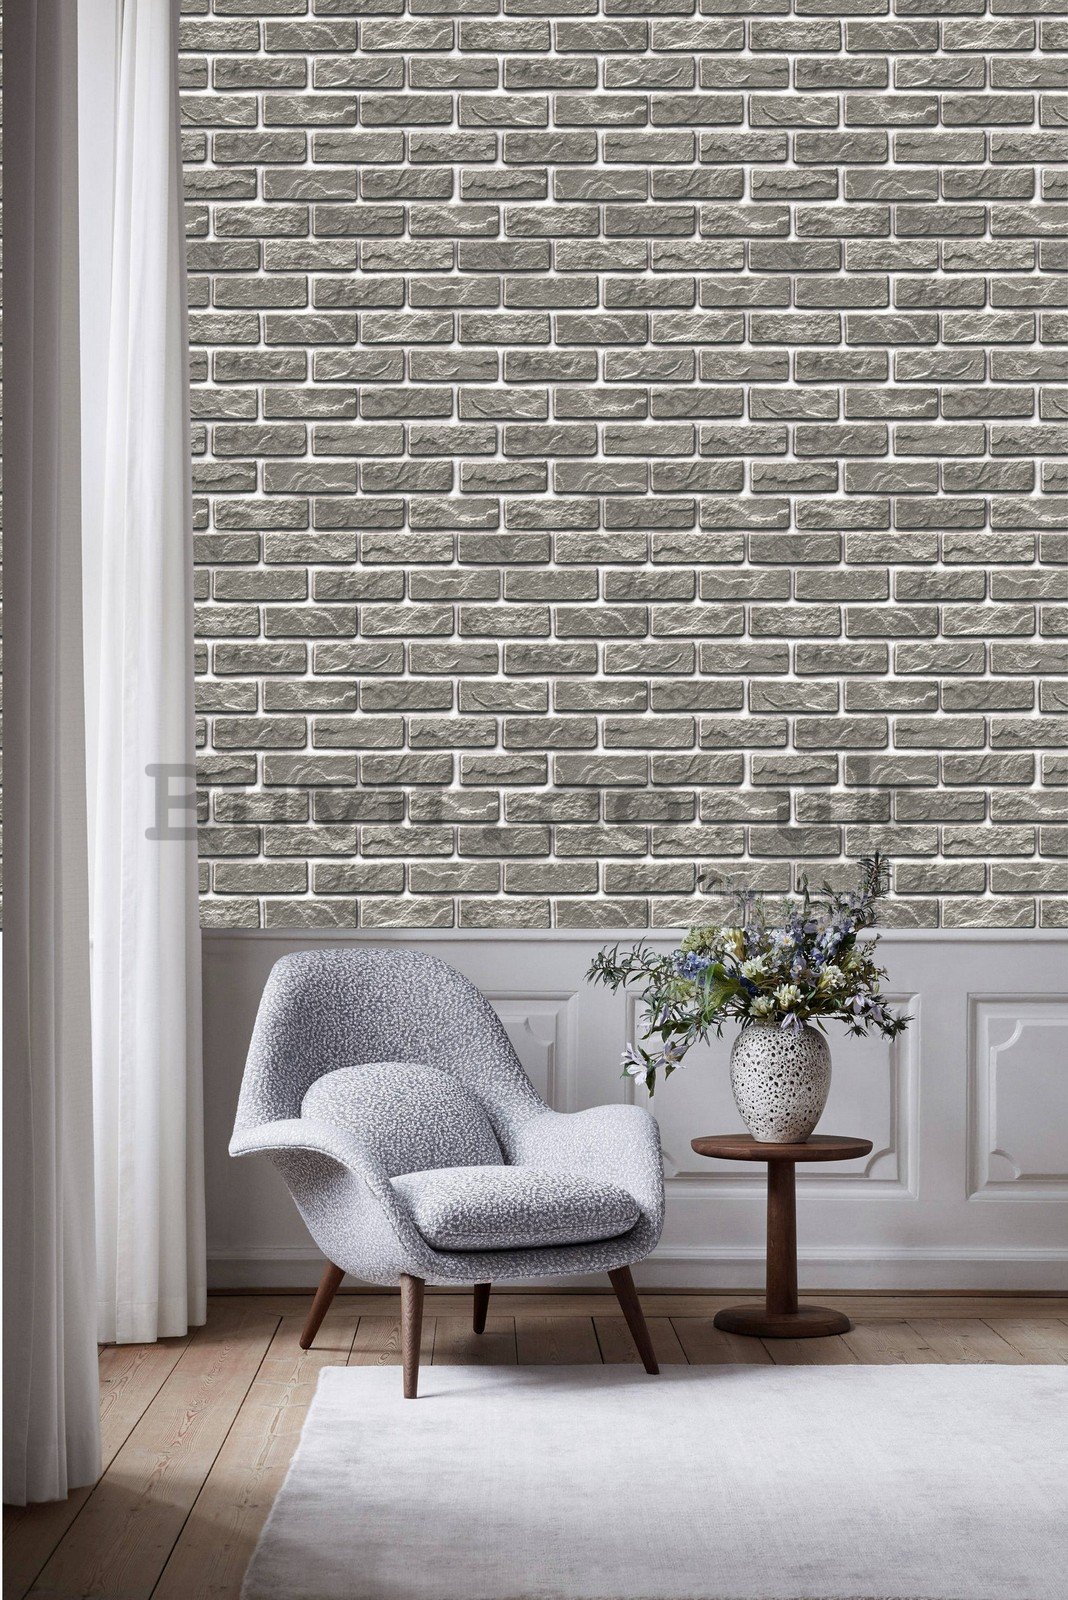 Vinyl wallpaper regular gray brick wall